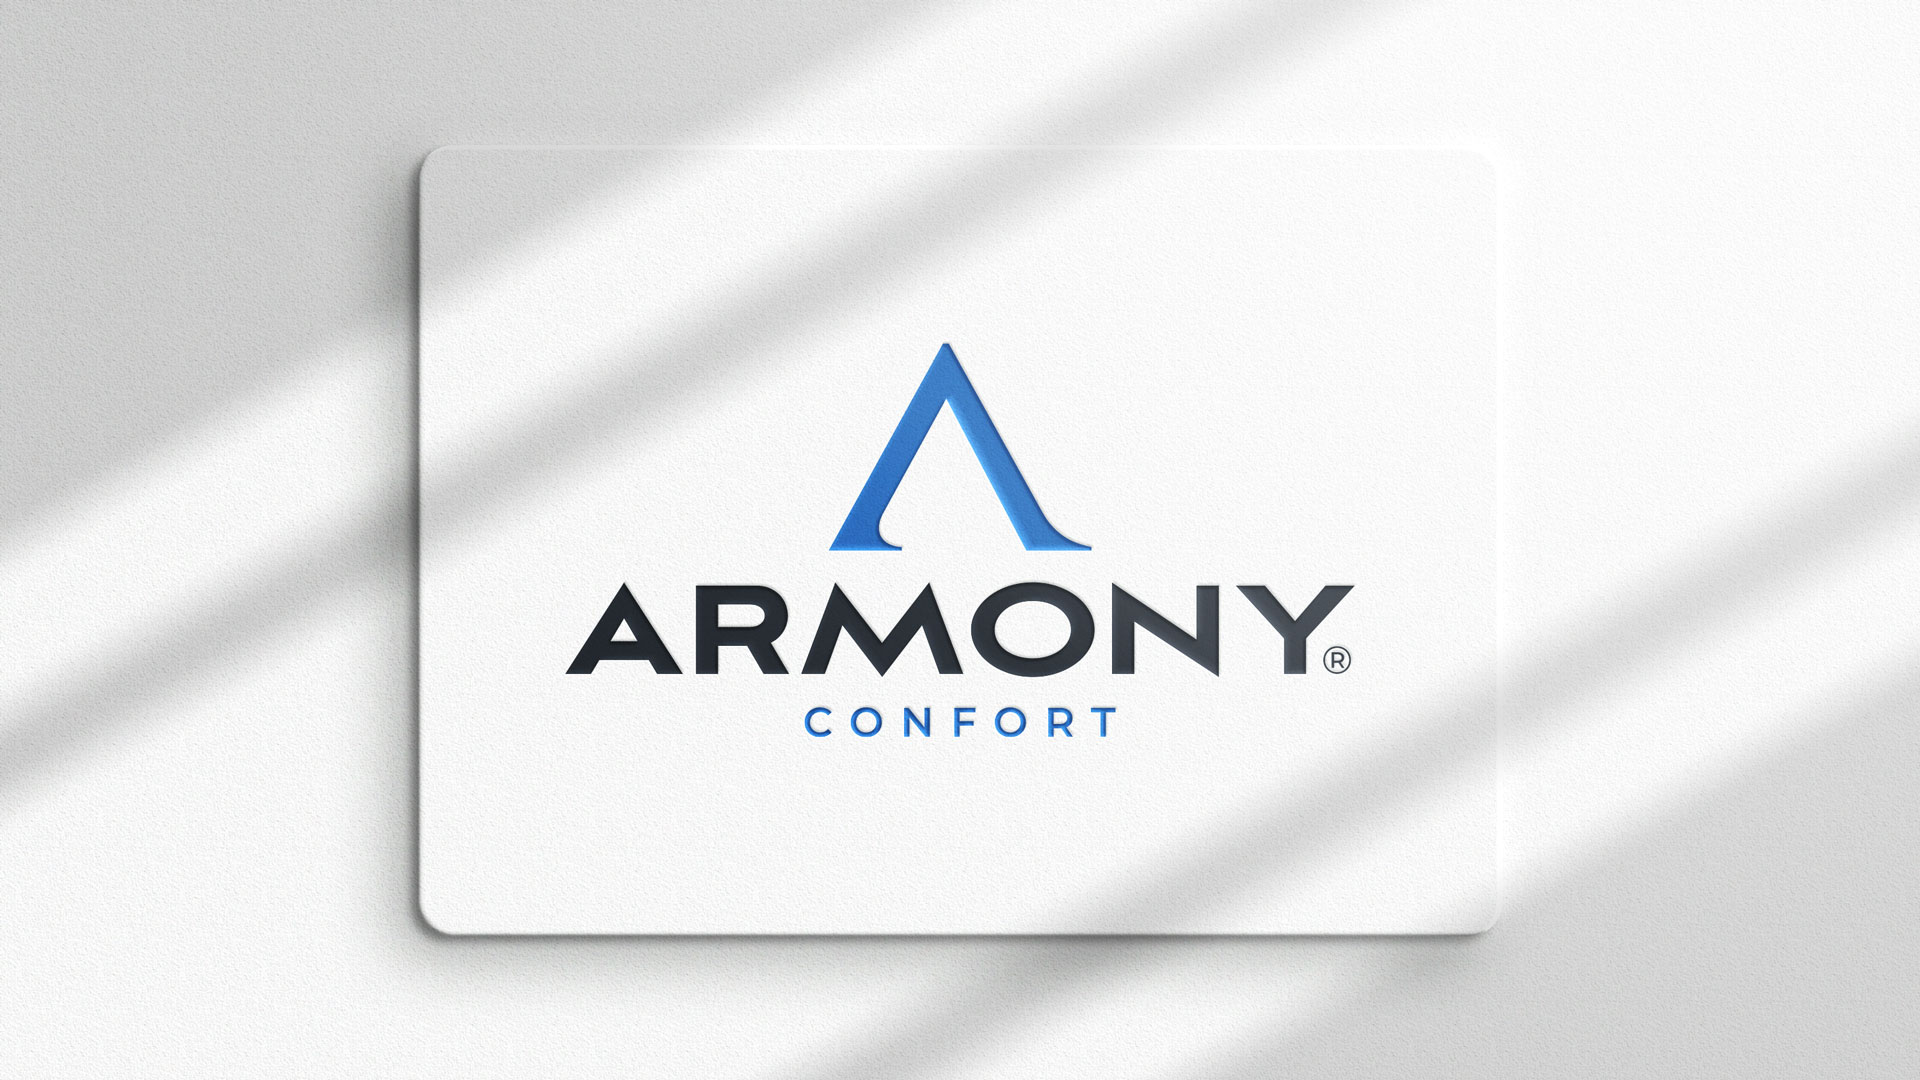 Armony Confort